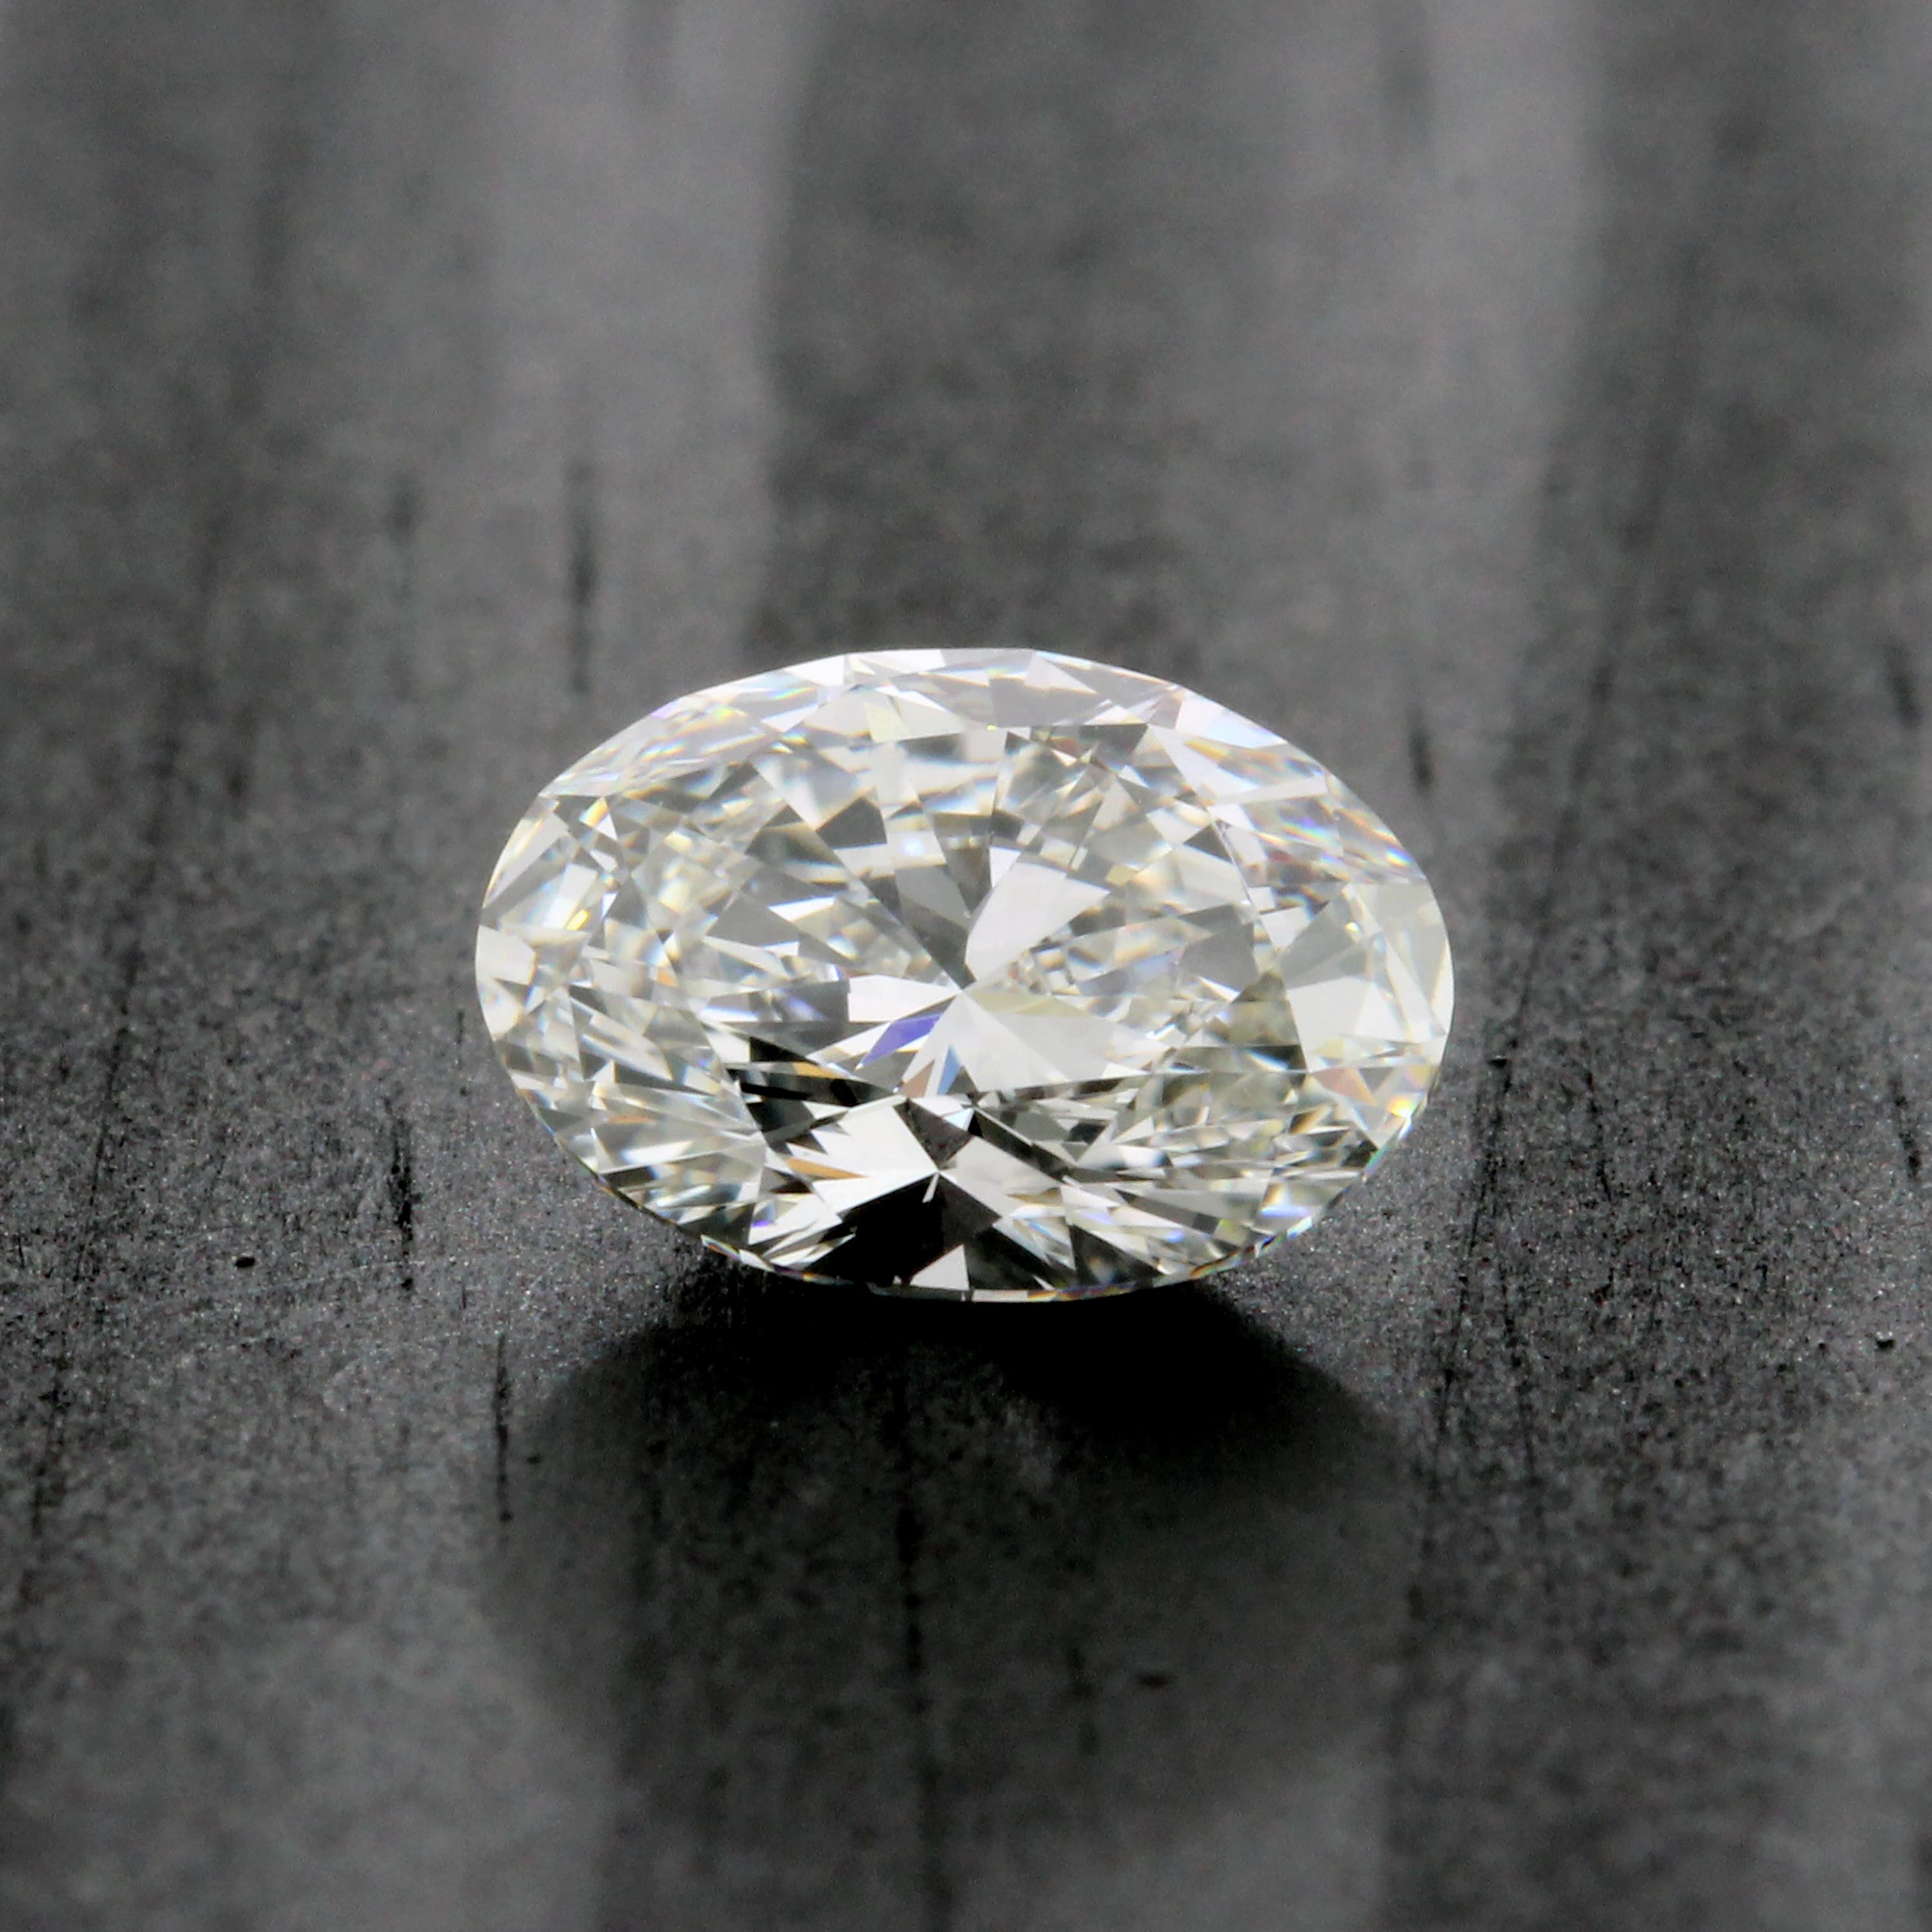 2 carat oval loose diamond